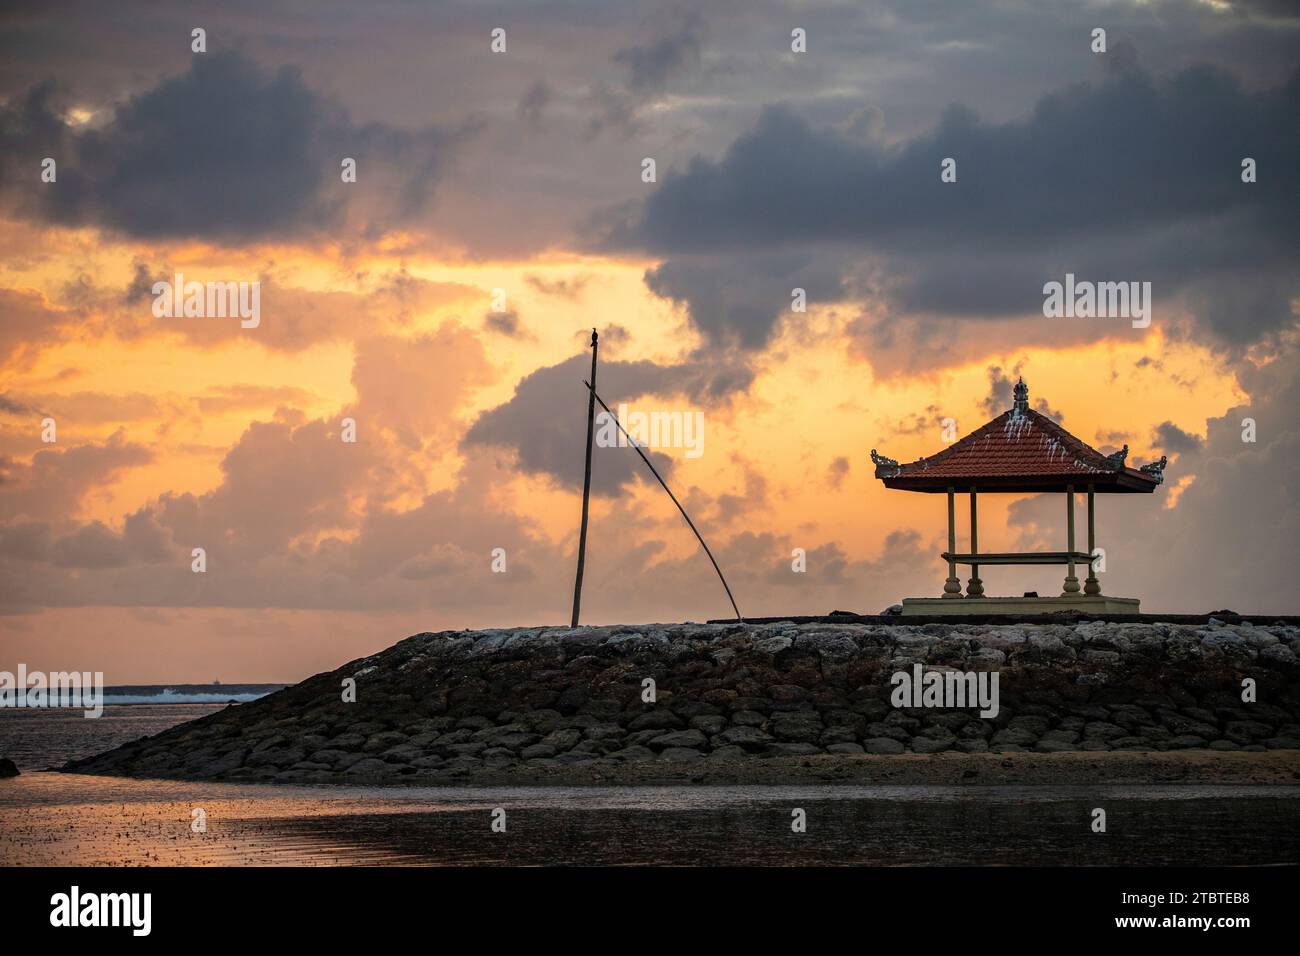 Alba sulla spiaggia di sabbia, paesaggio girato con vista del mare e della spiaggia, onde luminose e splendida atmosfera mattutina, Sanur, Bali, Indonesia Foto Stock